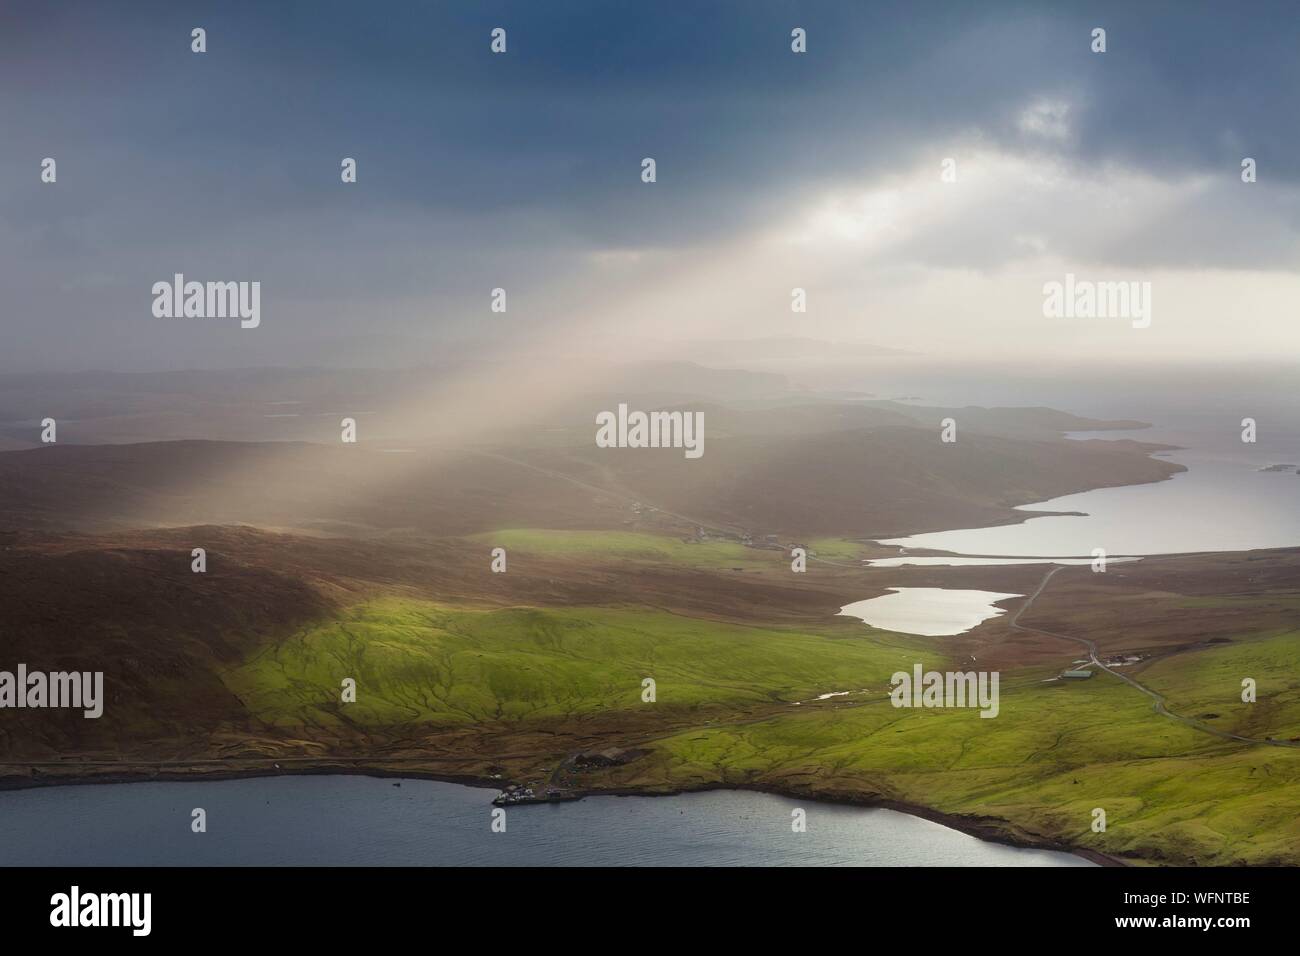 Reino Unido, Escocia, Islas Shetland, Continental, Ronas Hill, la creciente tormenta y rayo de sol visto desde el punto más alto del archipiélago Shetland, elevándose a 450 metros sobre el nivel del mar. Foto de stock